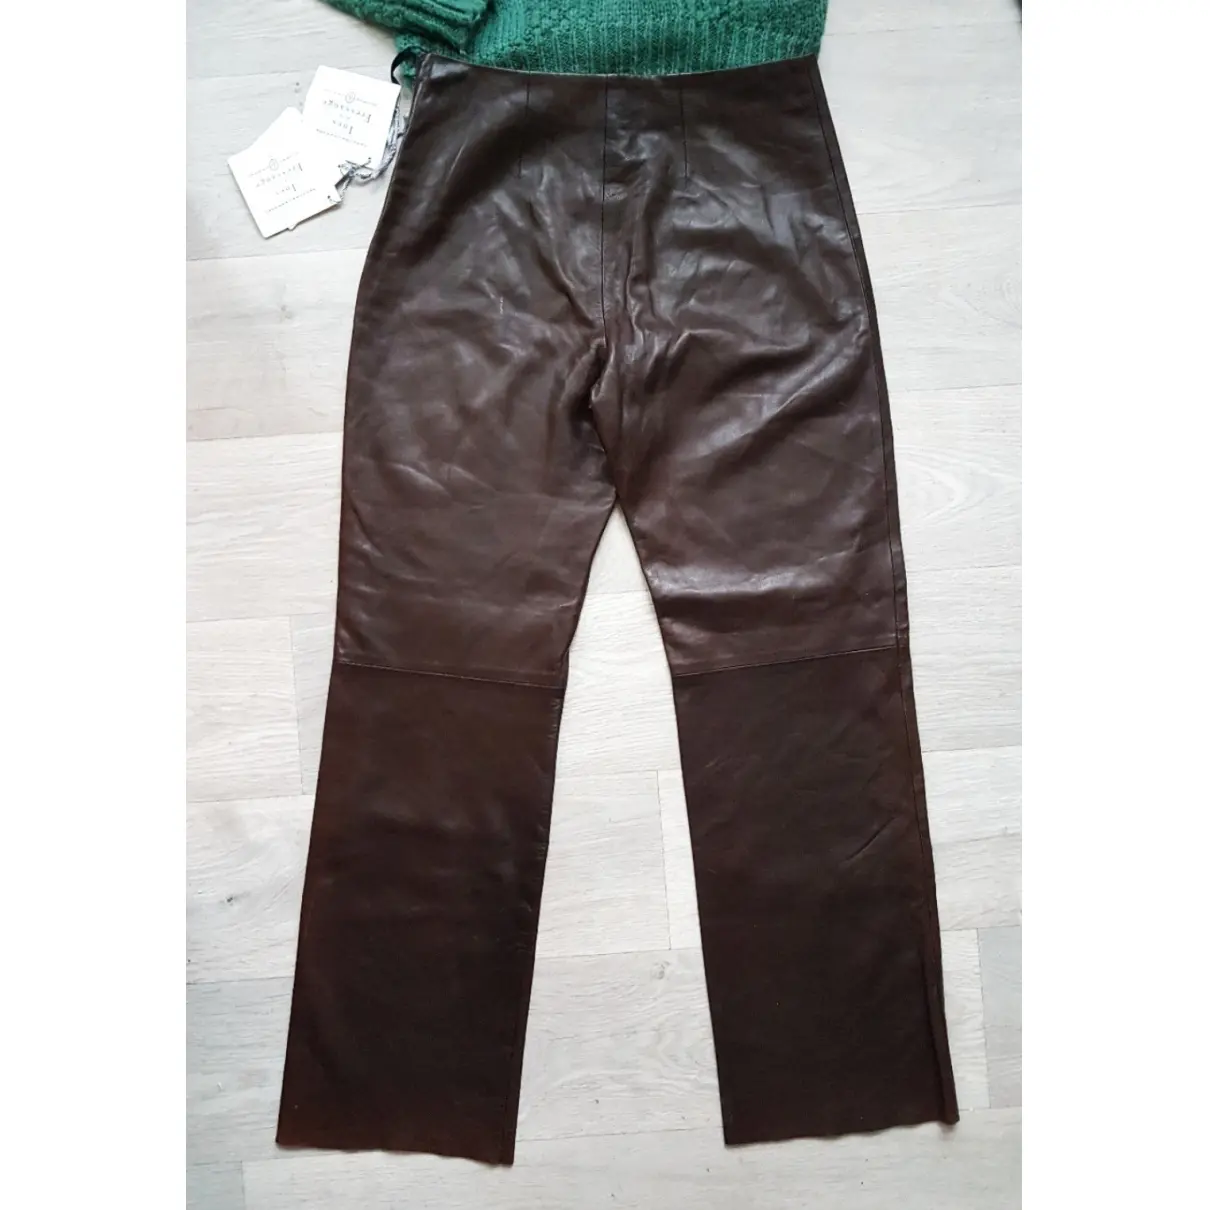 Inès De La Fressange Paris Leather straight pants for sale - Vintage